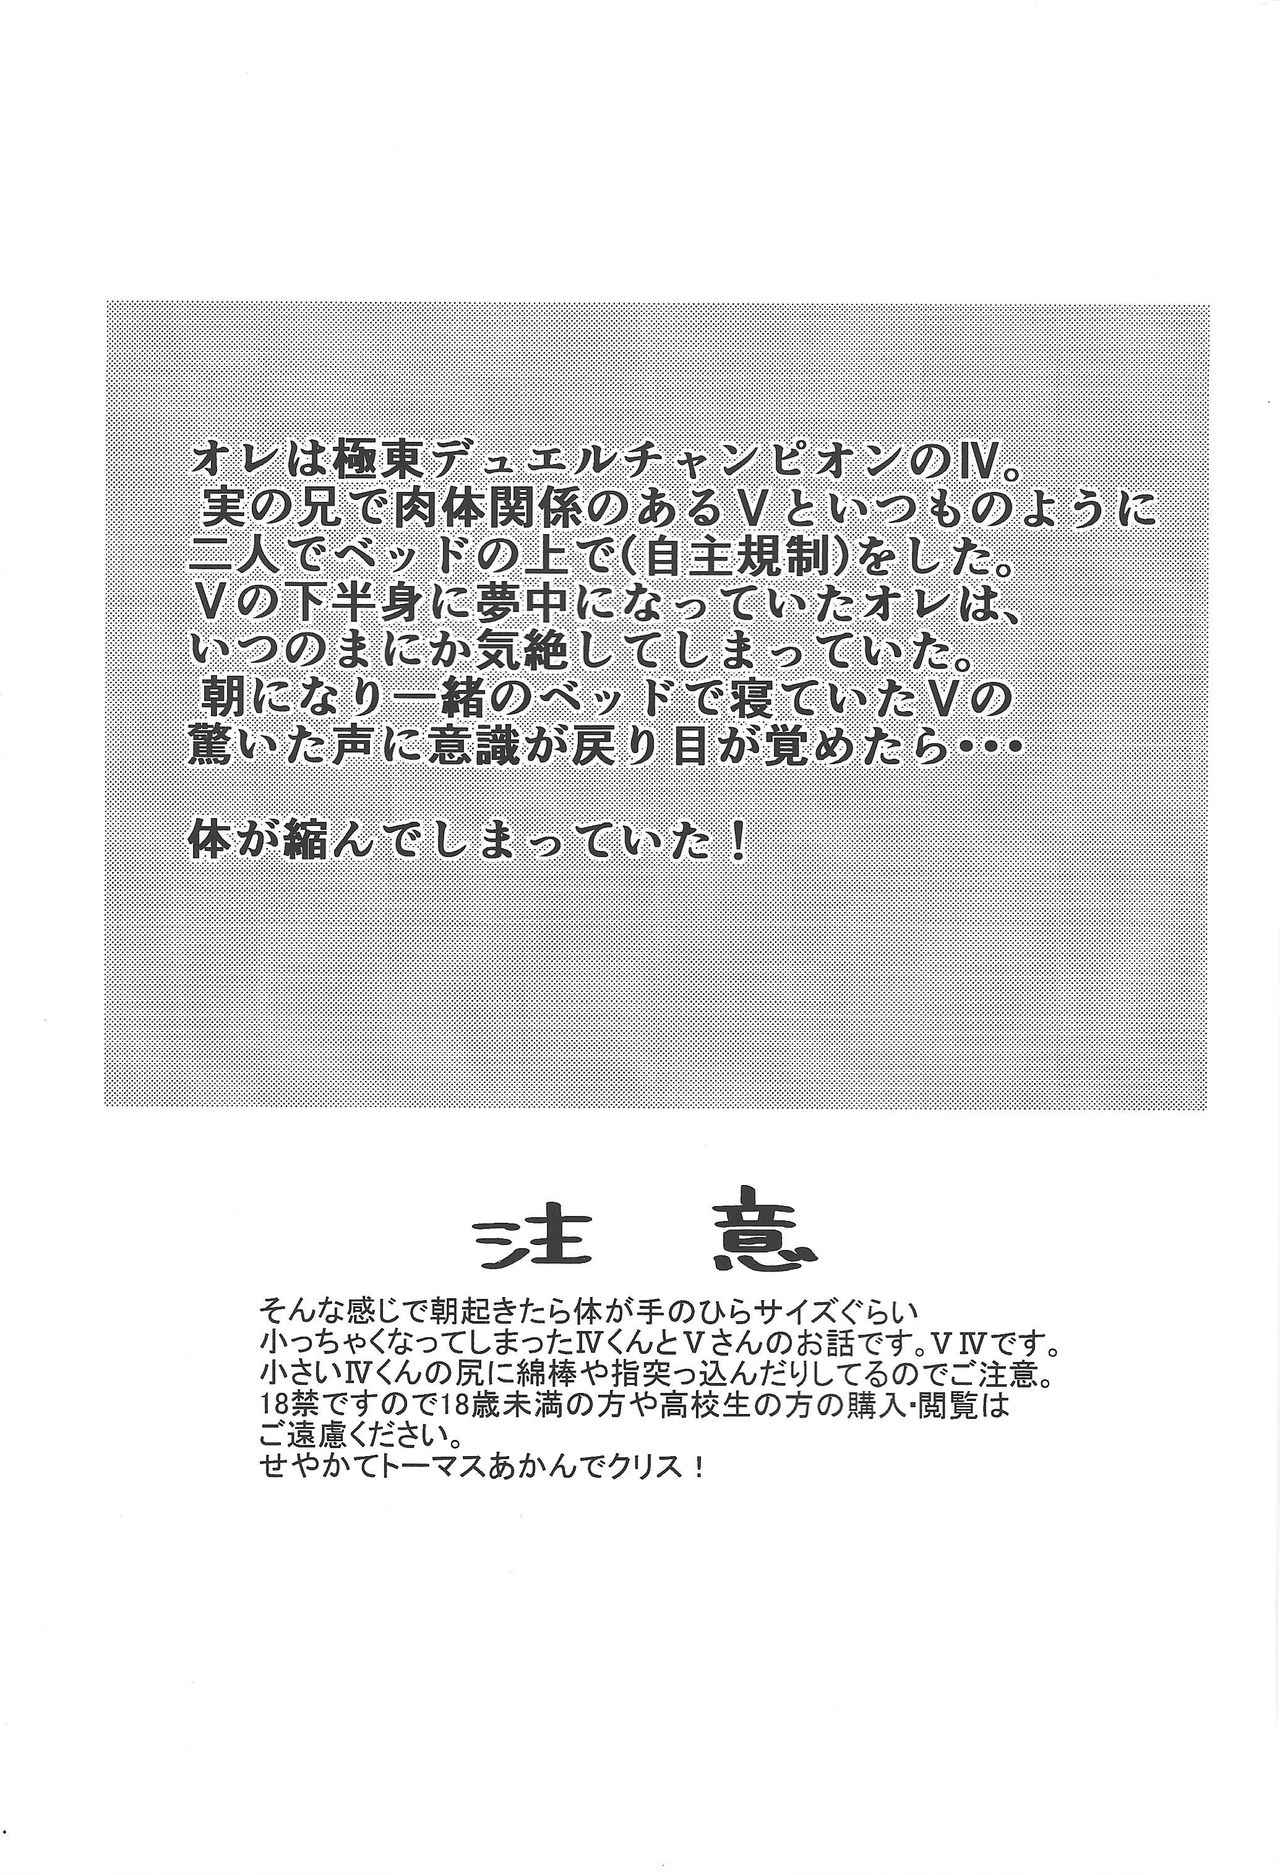 (Sennen Battle Phase 7) [Figure 4 (Yadzu)] Minimamu chanpion (Yu-Gi-Oh! ZEXAL) page 2 full